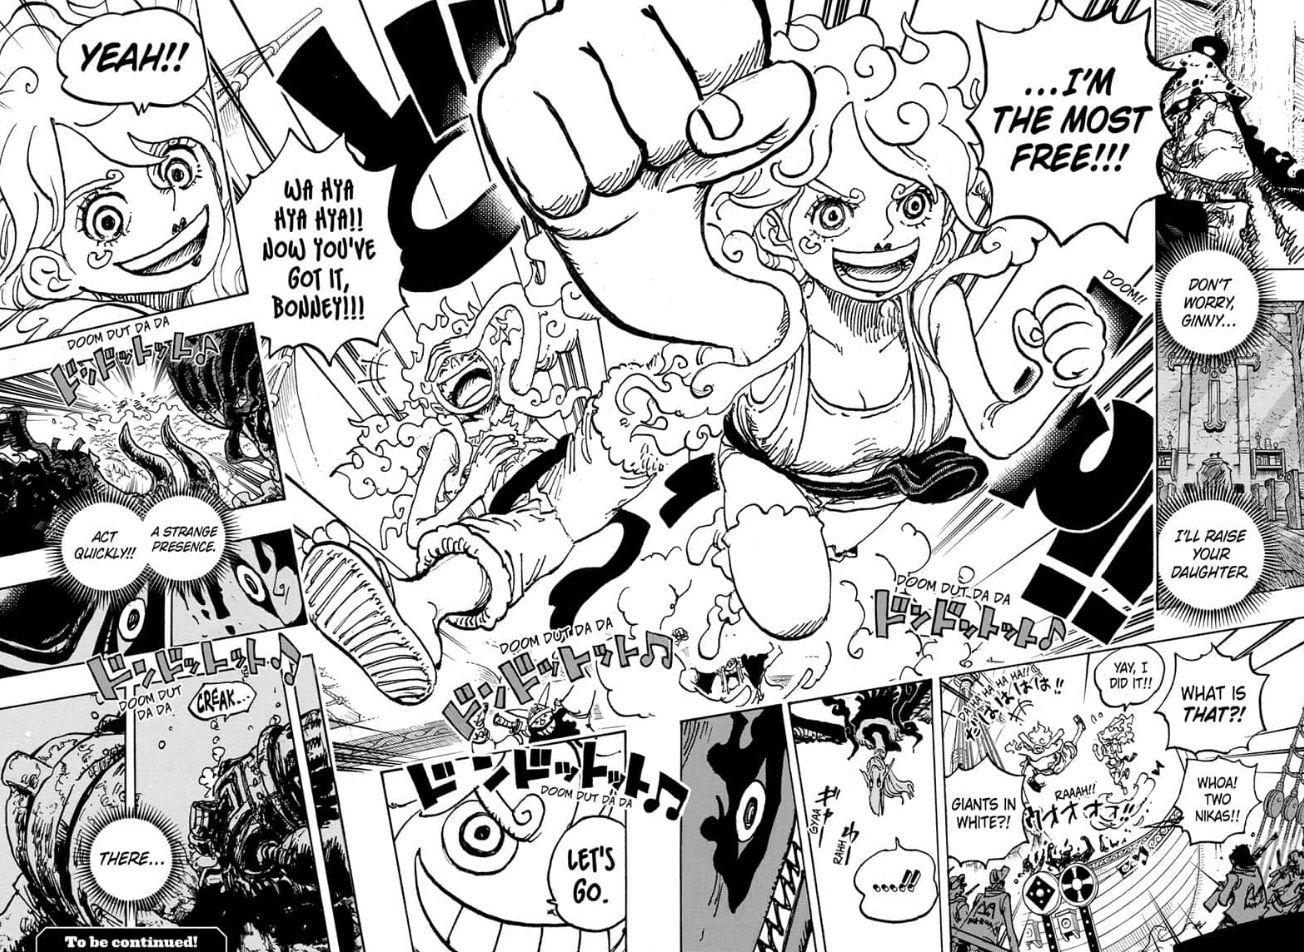 Глава 1118 One Piece раскрывает новые способности Бонни